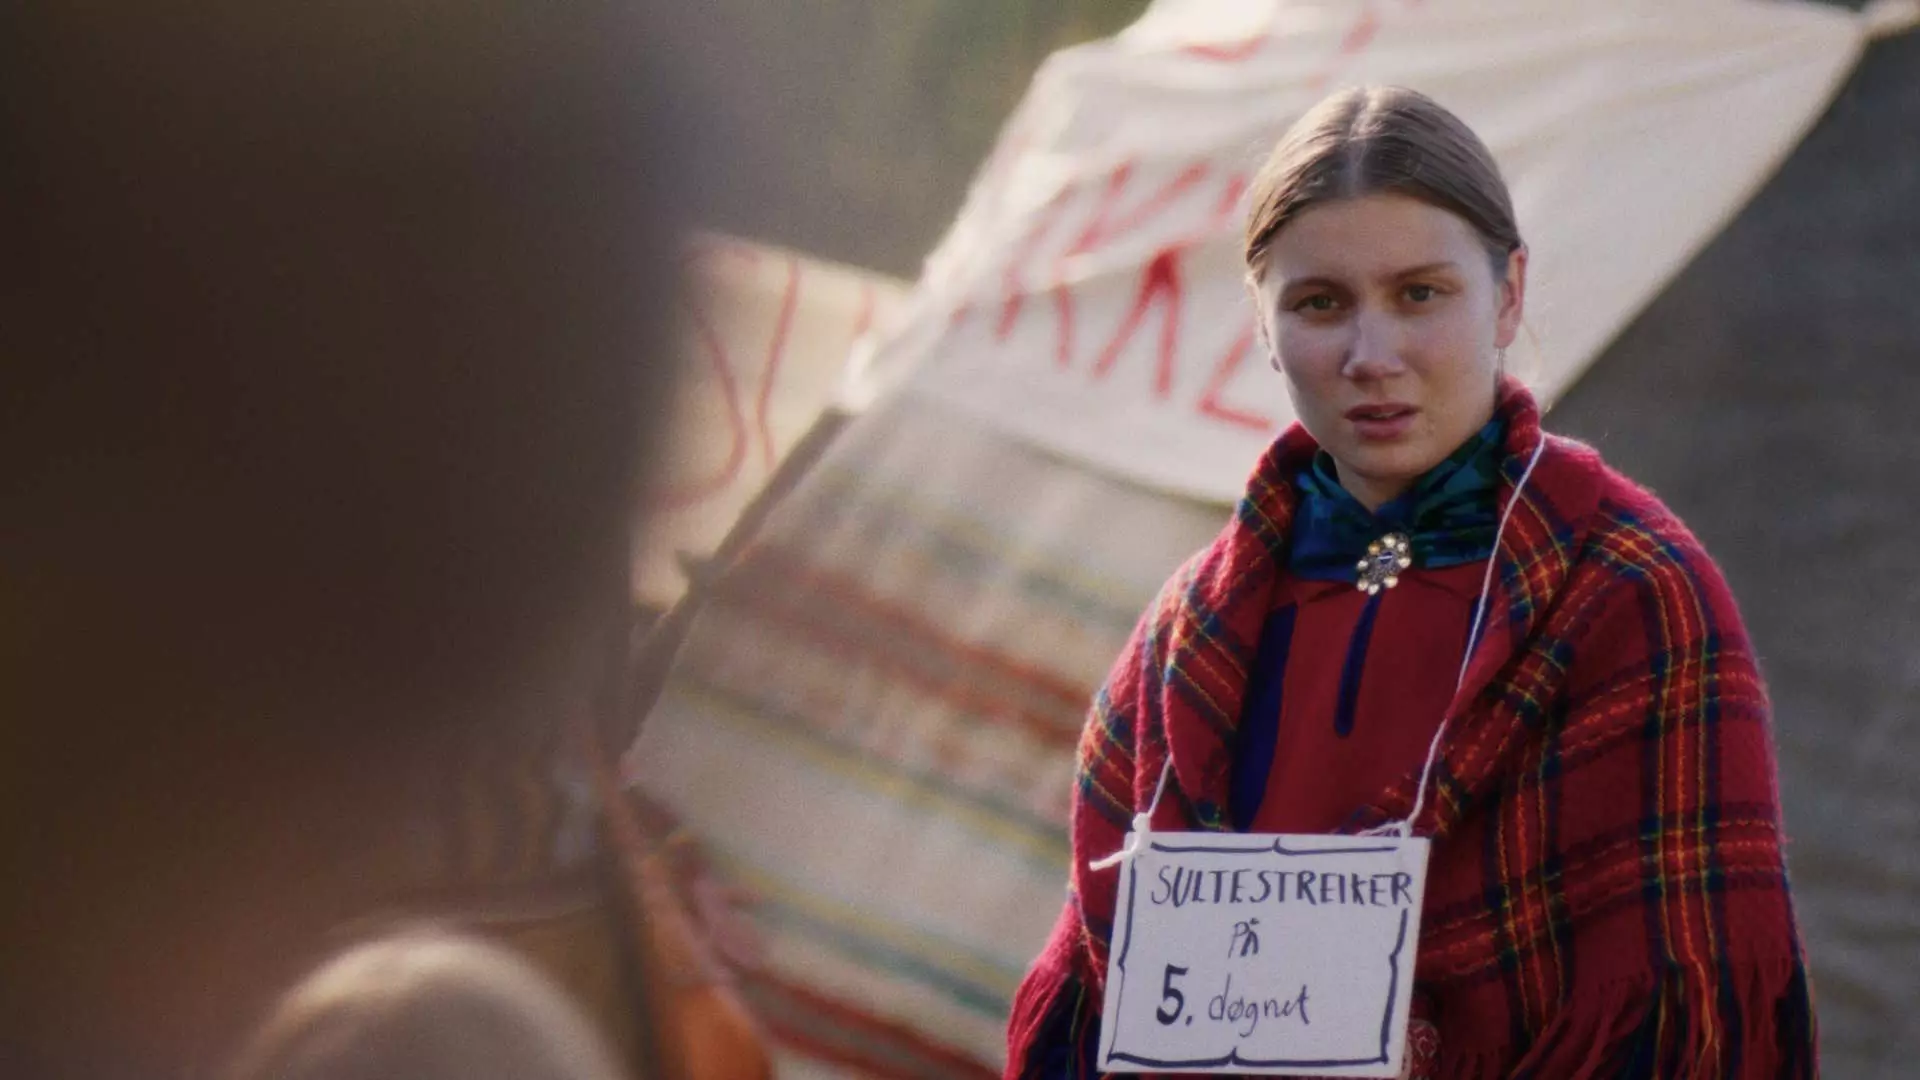 Ung kvinne ikledd rødt rutete sjal og en samisk sølje i halsen. Rundt halsen henger et skilt hvor det står "sultestreiker". Hun ser oppgitt ut. I bakgrunnen kan vi skimte en lavvo. 